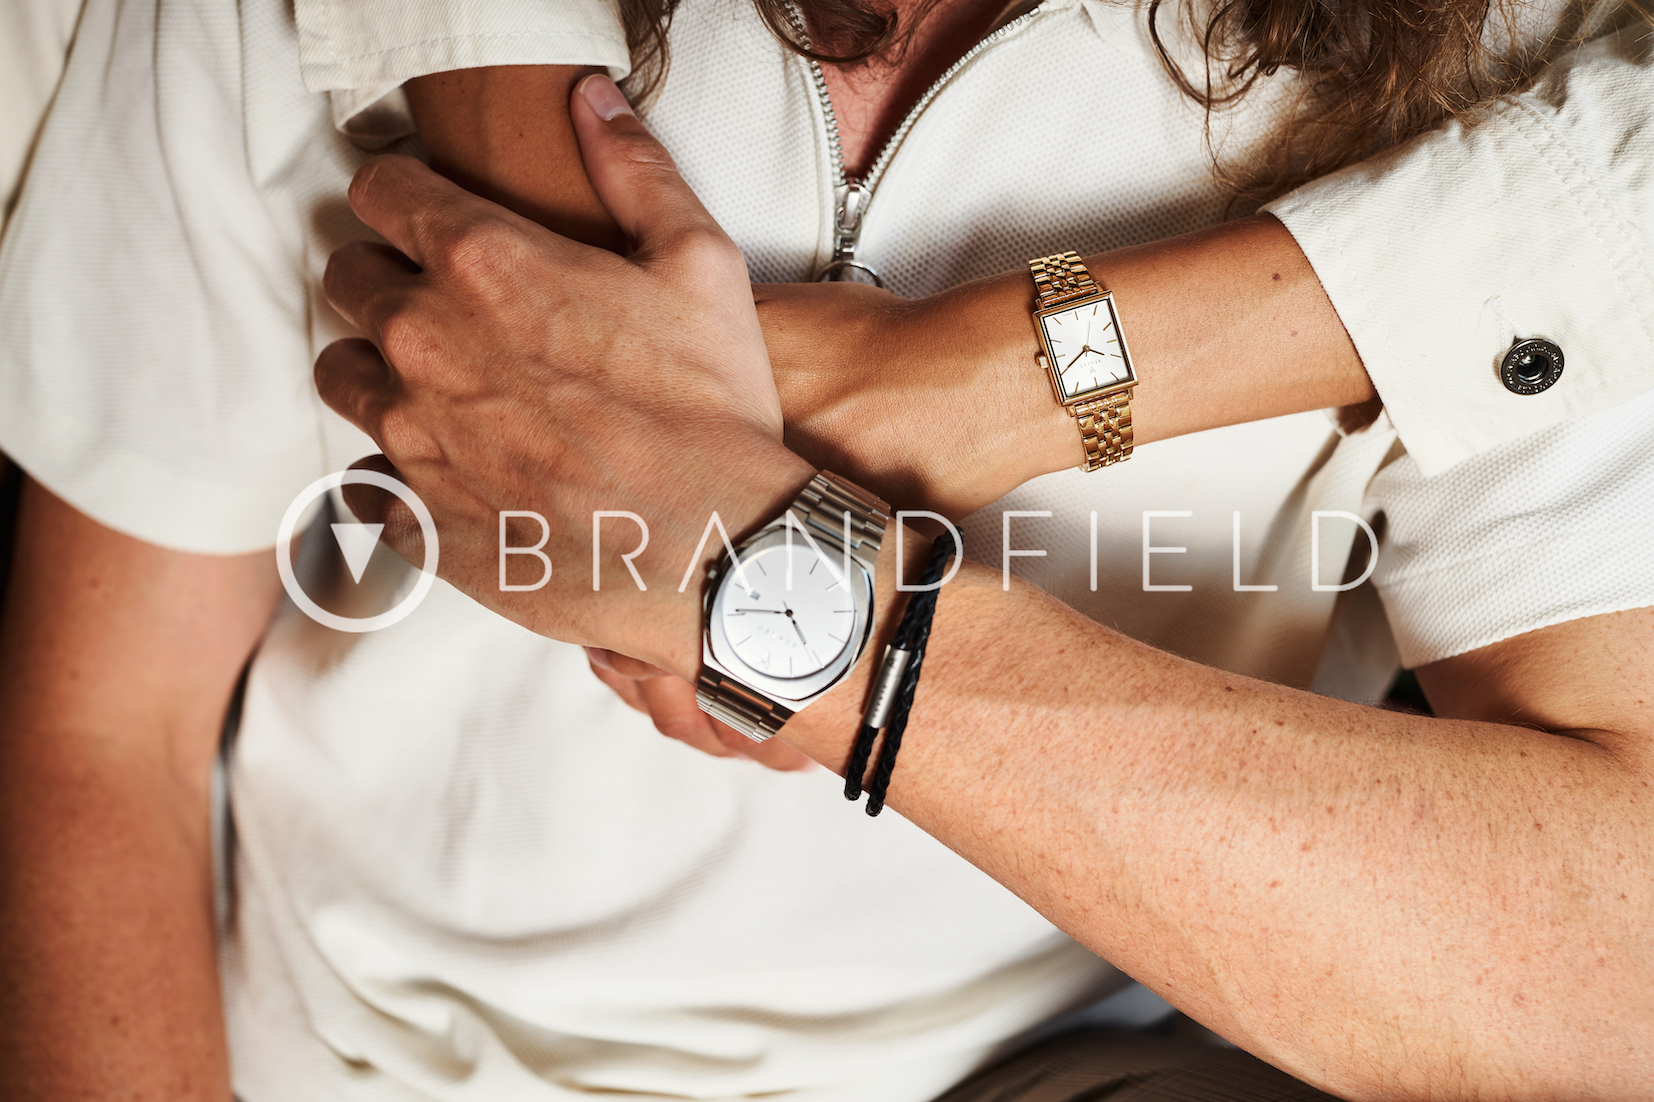 Voorbeeld Naar behoren Trouwens Brandfield Horloges - Waardebon t.w.v. €10 - Enjoyy